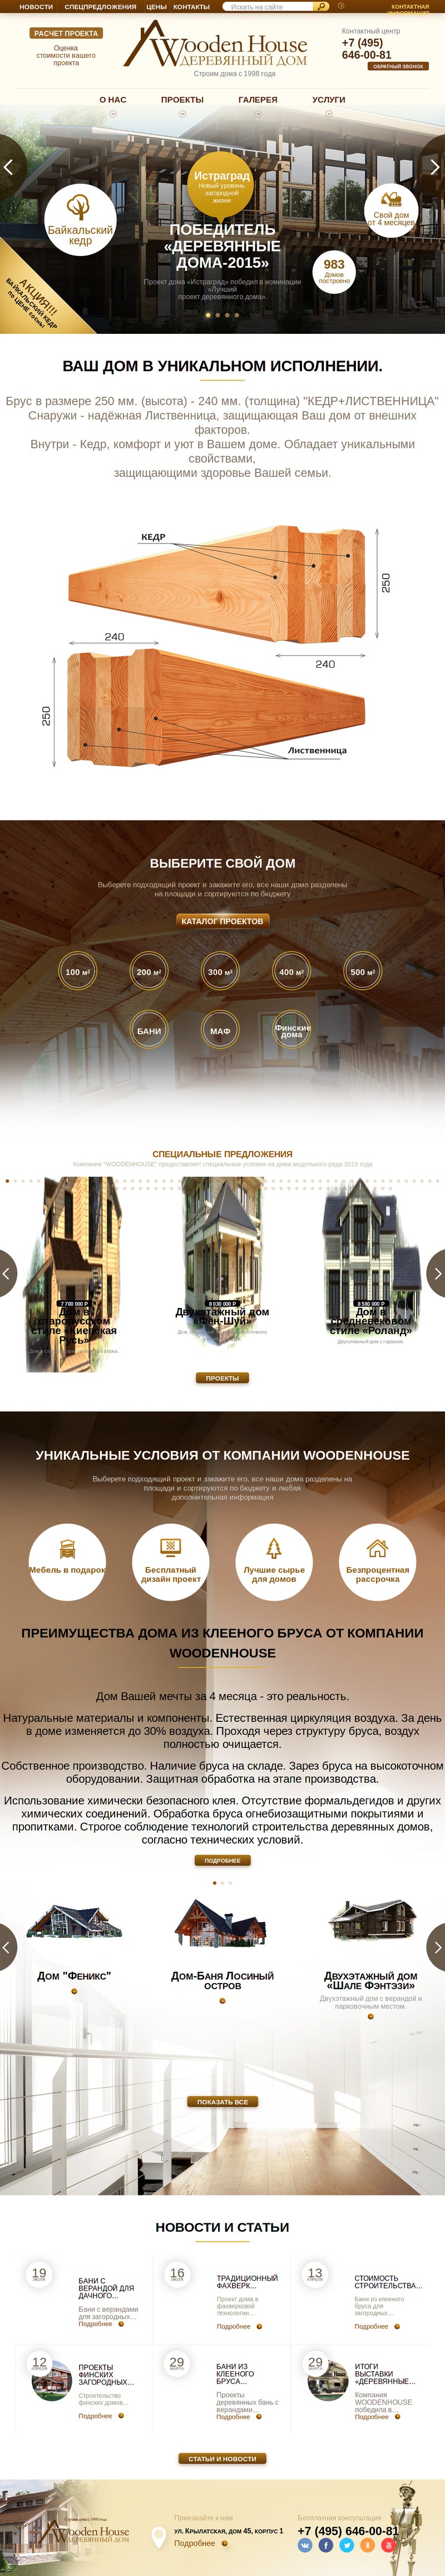 Woodenhouse